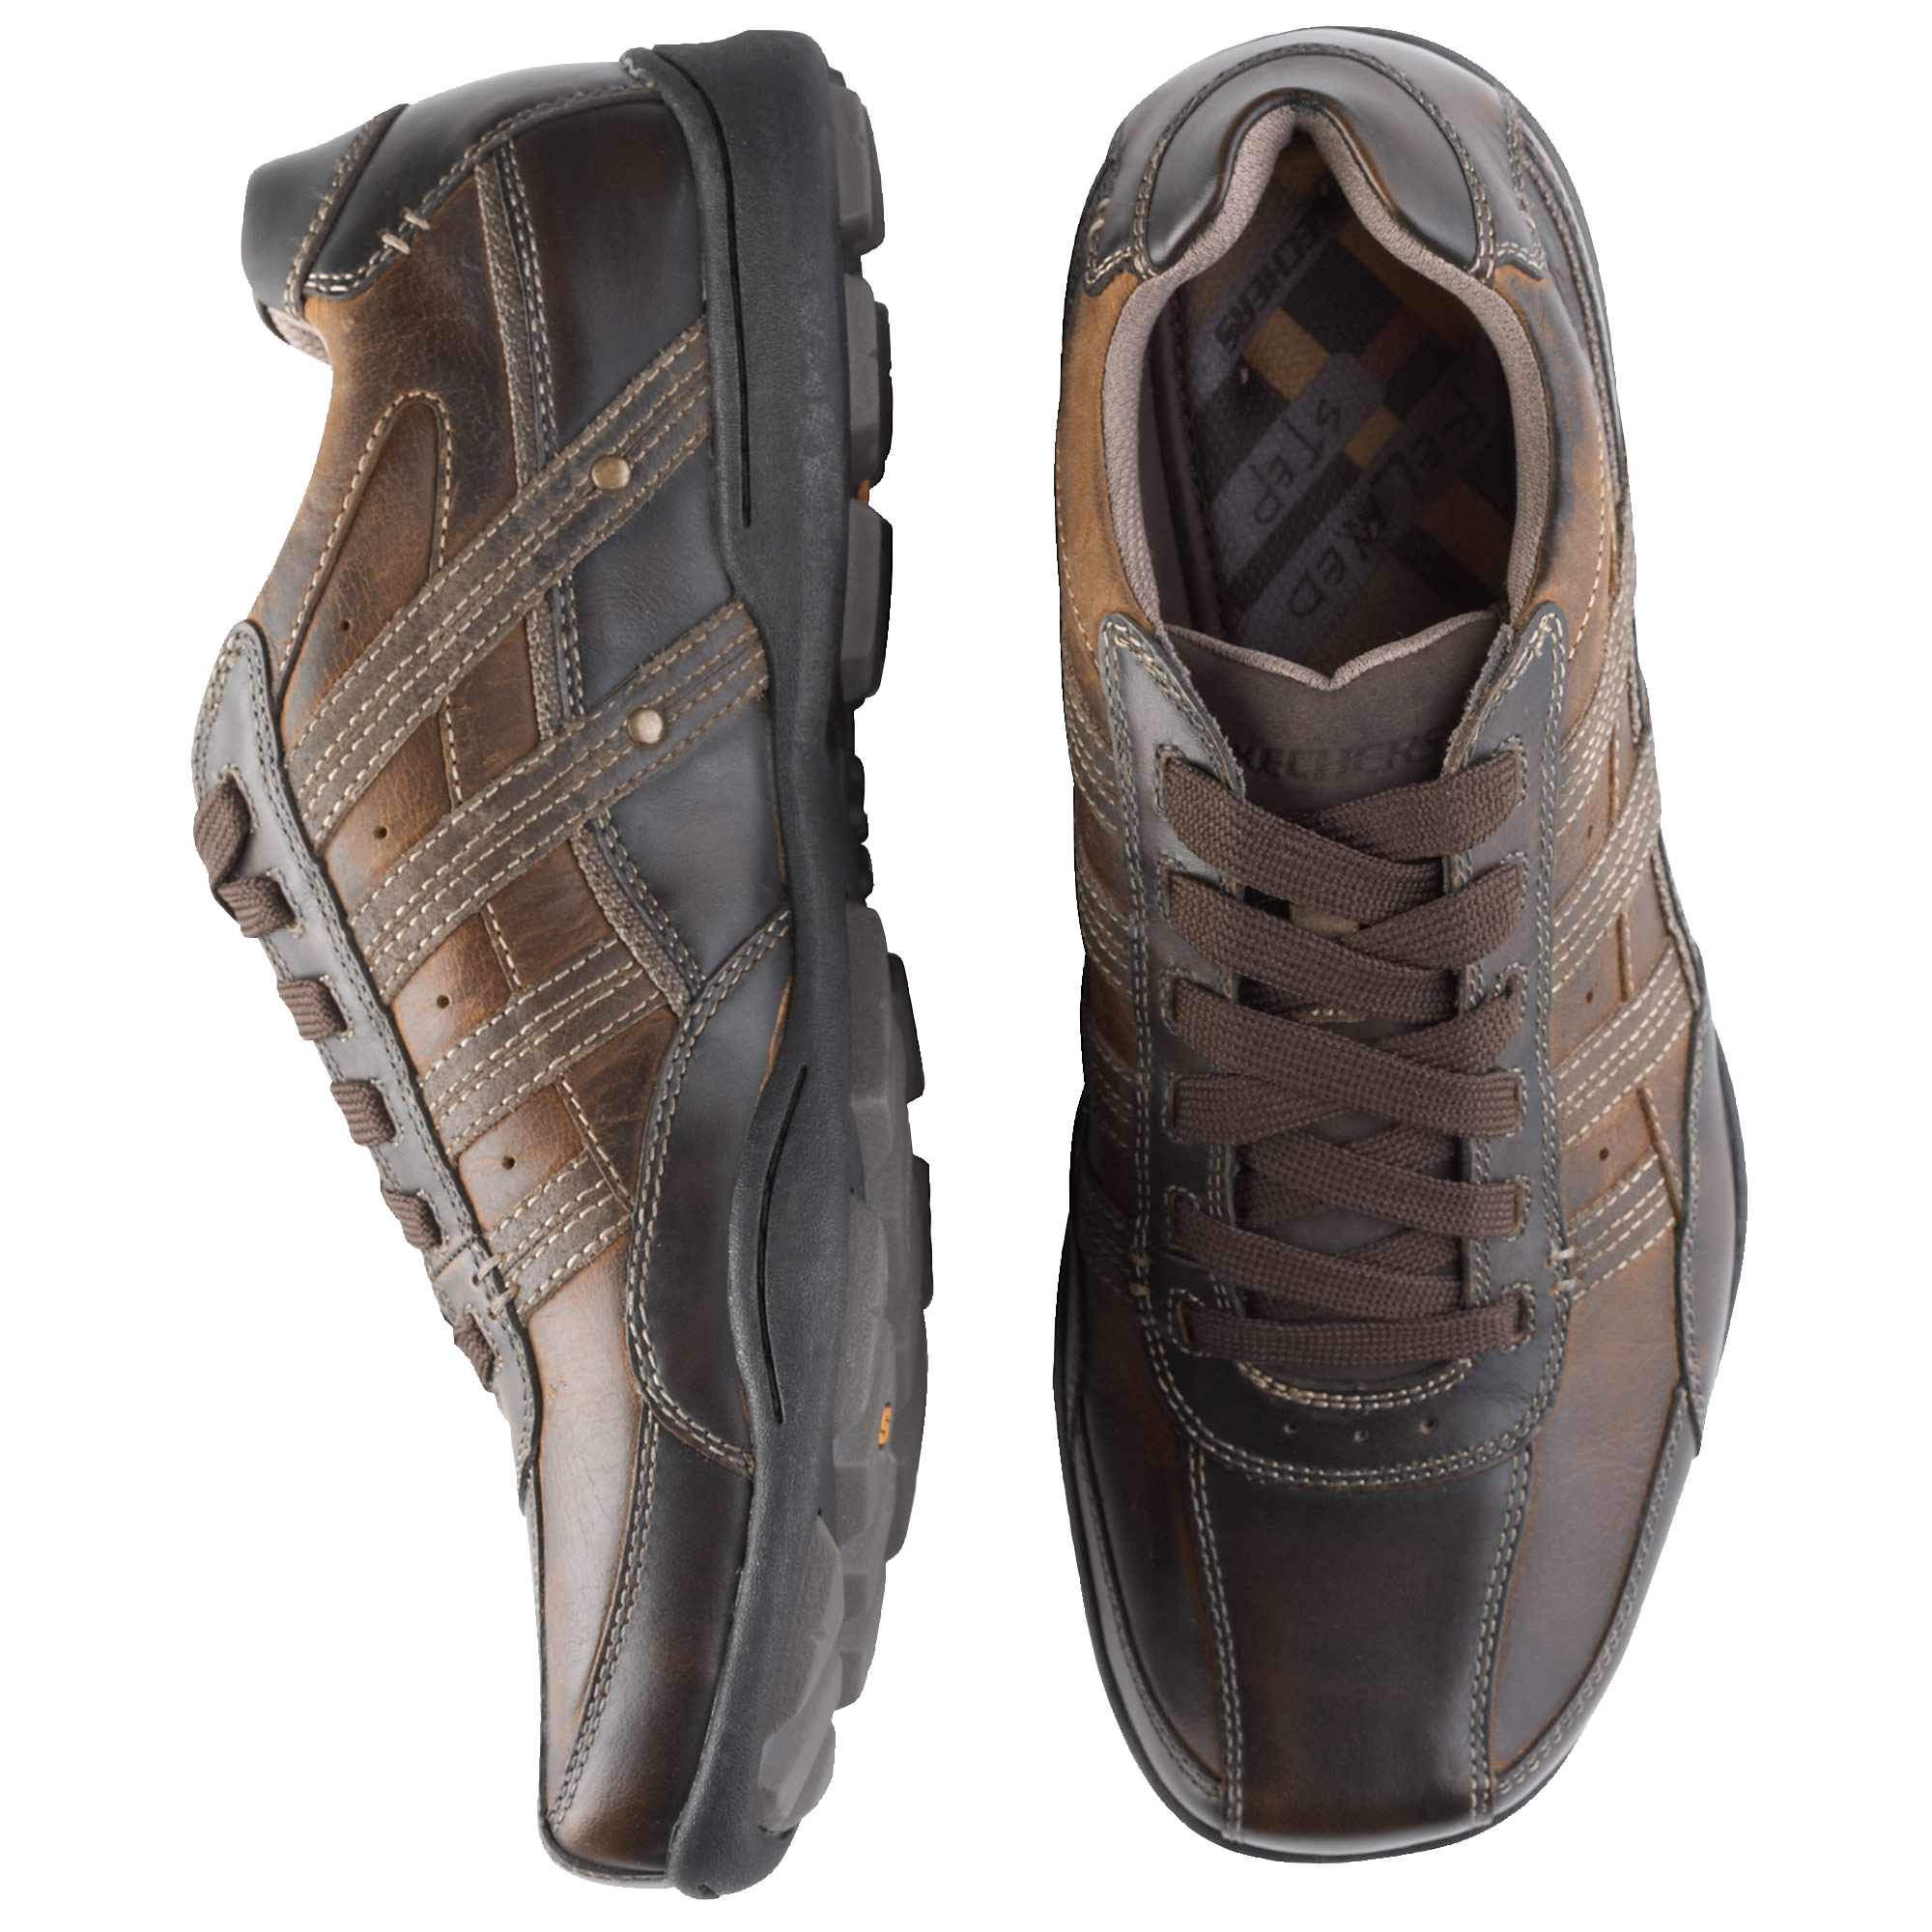 brown skechers tennis shoes